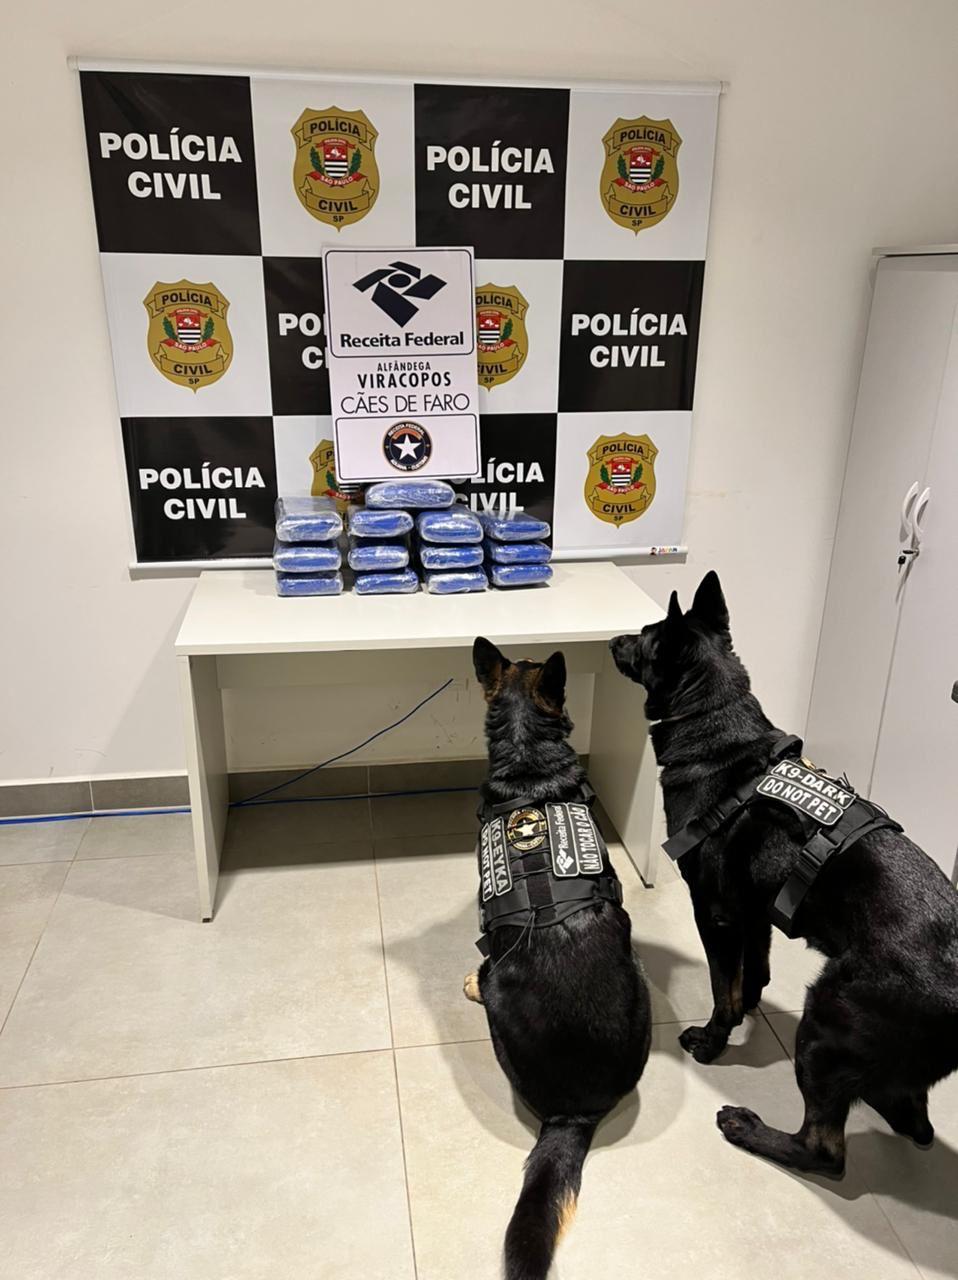 Durante a inspeção das bagagens, os cães farejadores indicaram a presença das drogas em uma das bagagens (Divulgação)